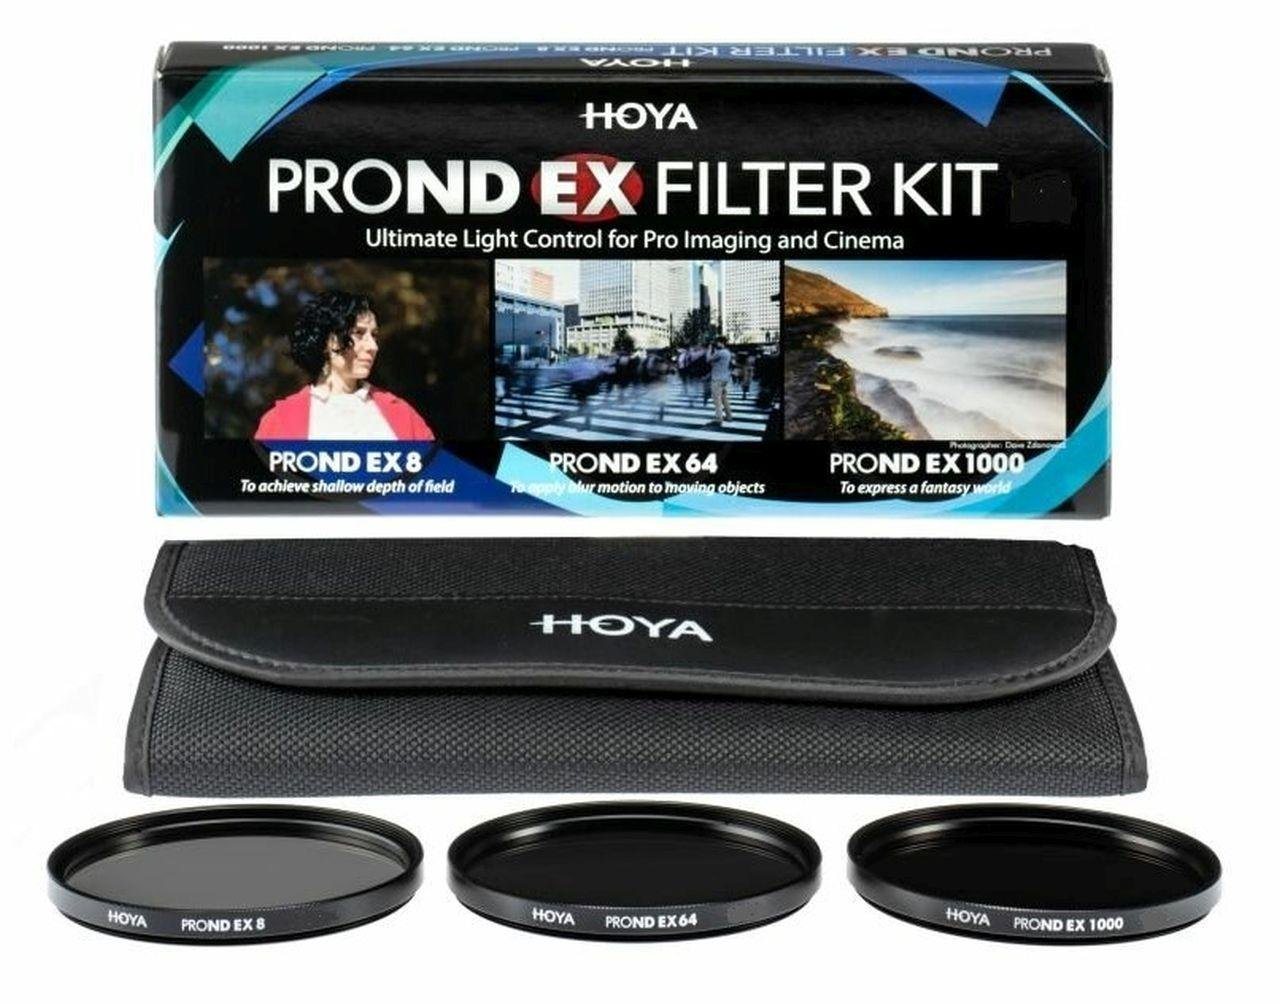 Hoya PROND EX ND Filter Set 8/64/1000 52mm Objektivzubehör von Hoya